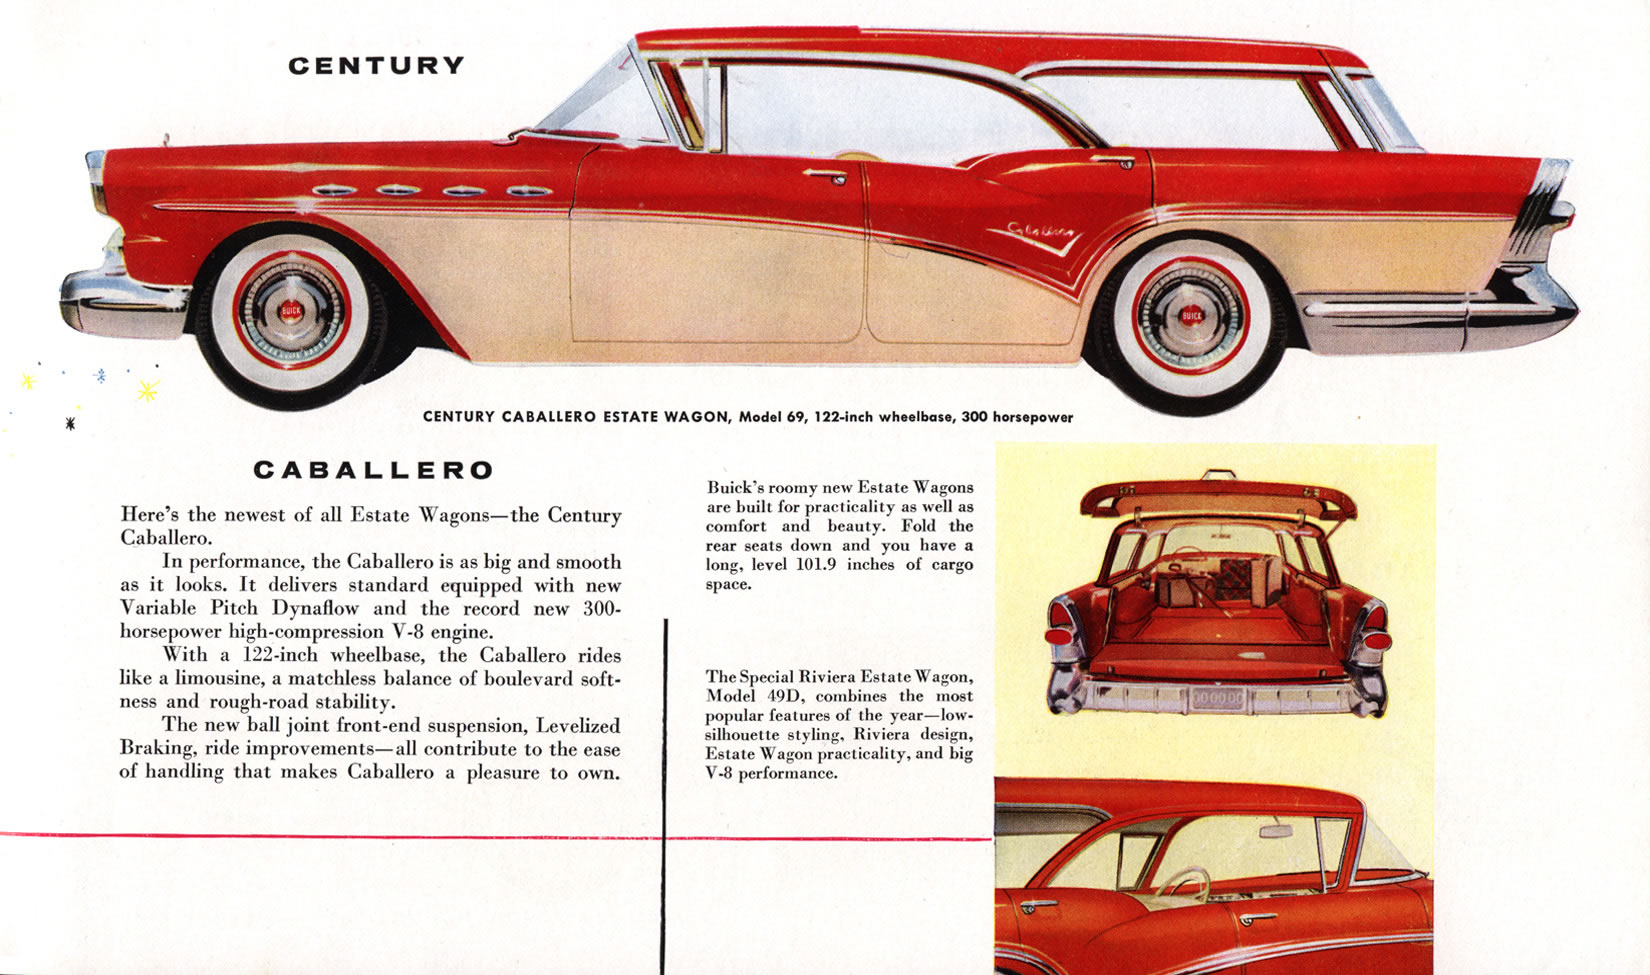 1957 Buick-11